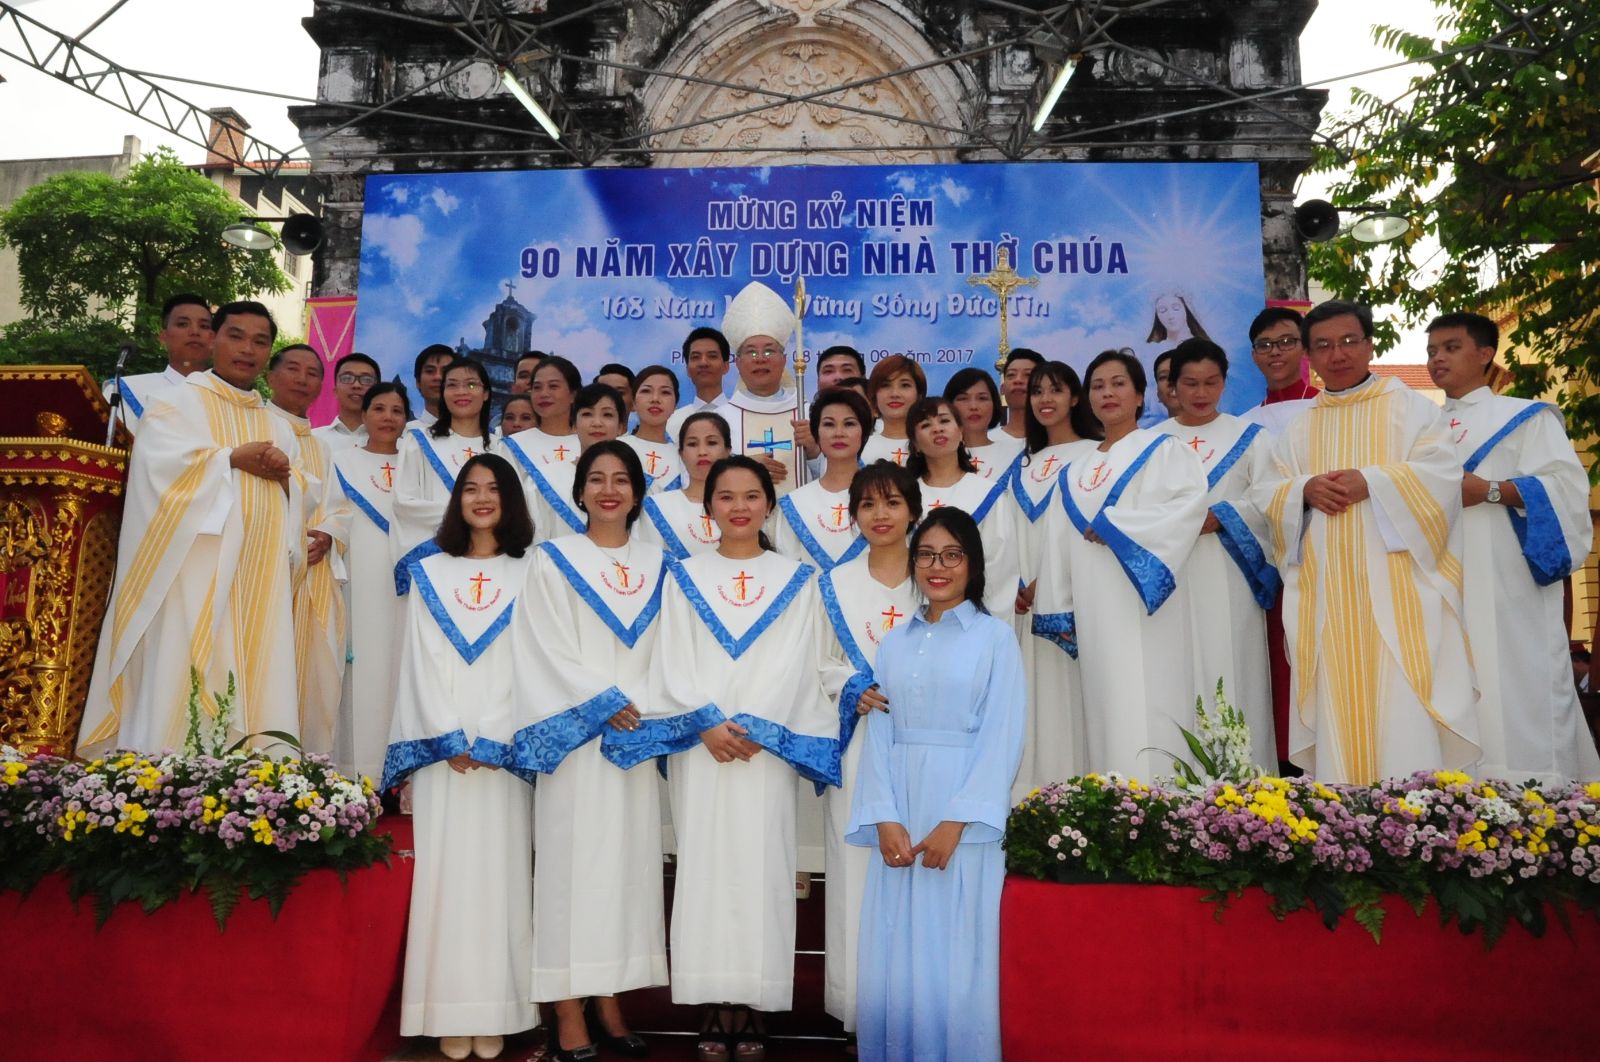 Đức Giám mục Ailosio Nguyễn Hùng Vị chụp ảnh lưu niệm cùng ca đoàn giáo họ Phú Gia.